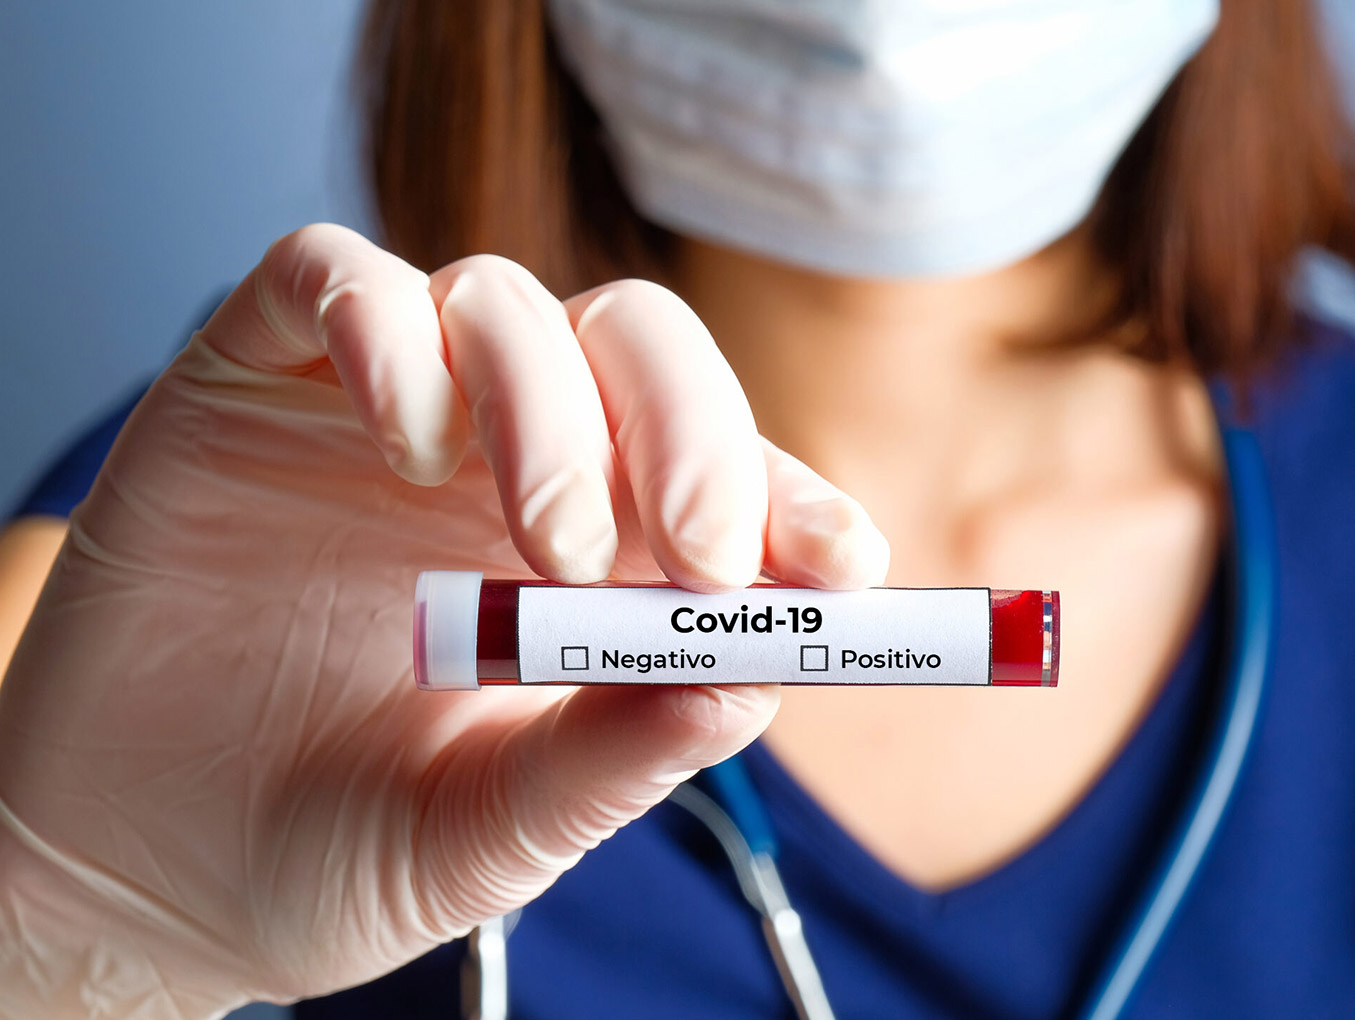 Enfermeira segura um tubo de ensaio com sangue coletado para examinar contaminação por Covid-19